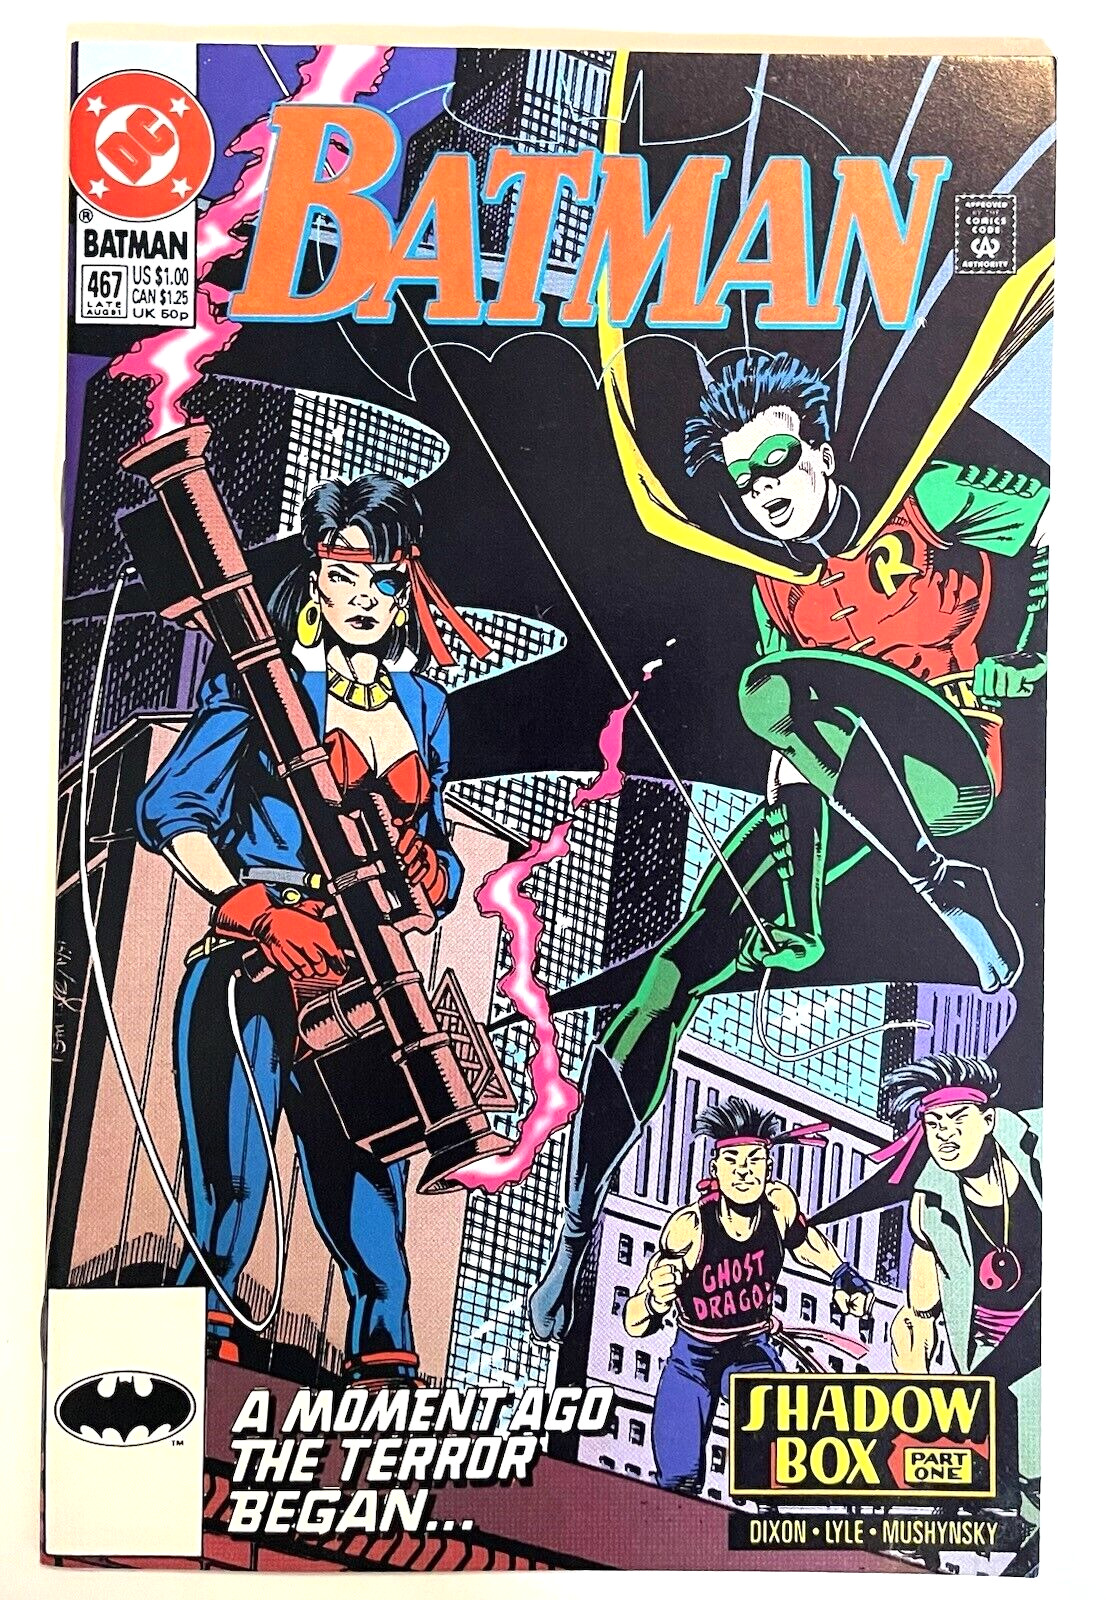 BATMAN #466 CVR A 1991 DC COMICS VF+